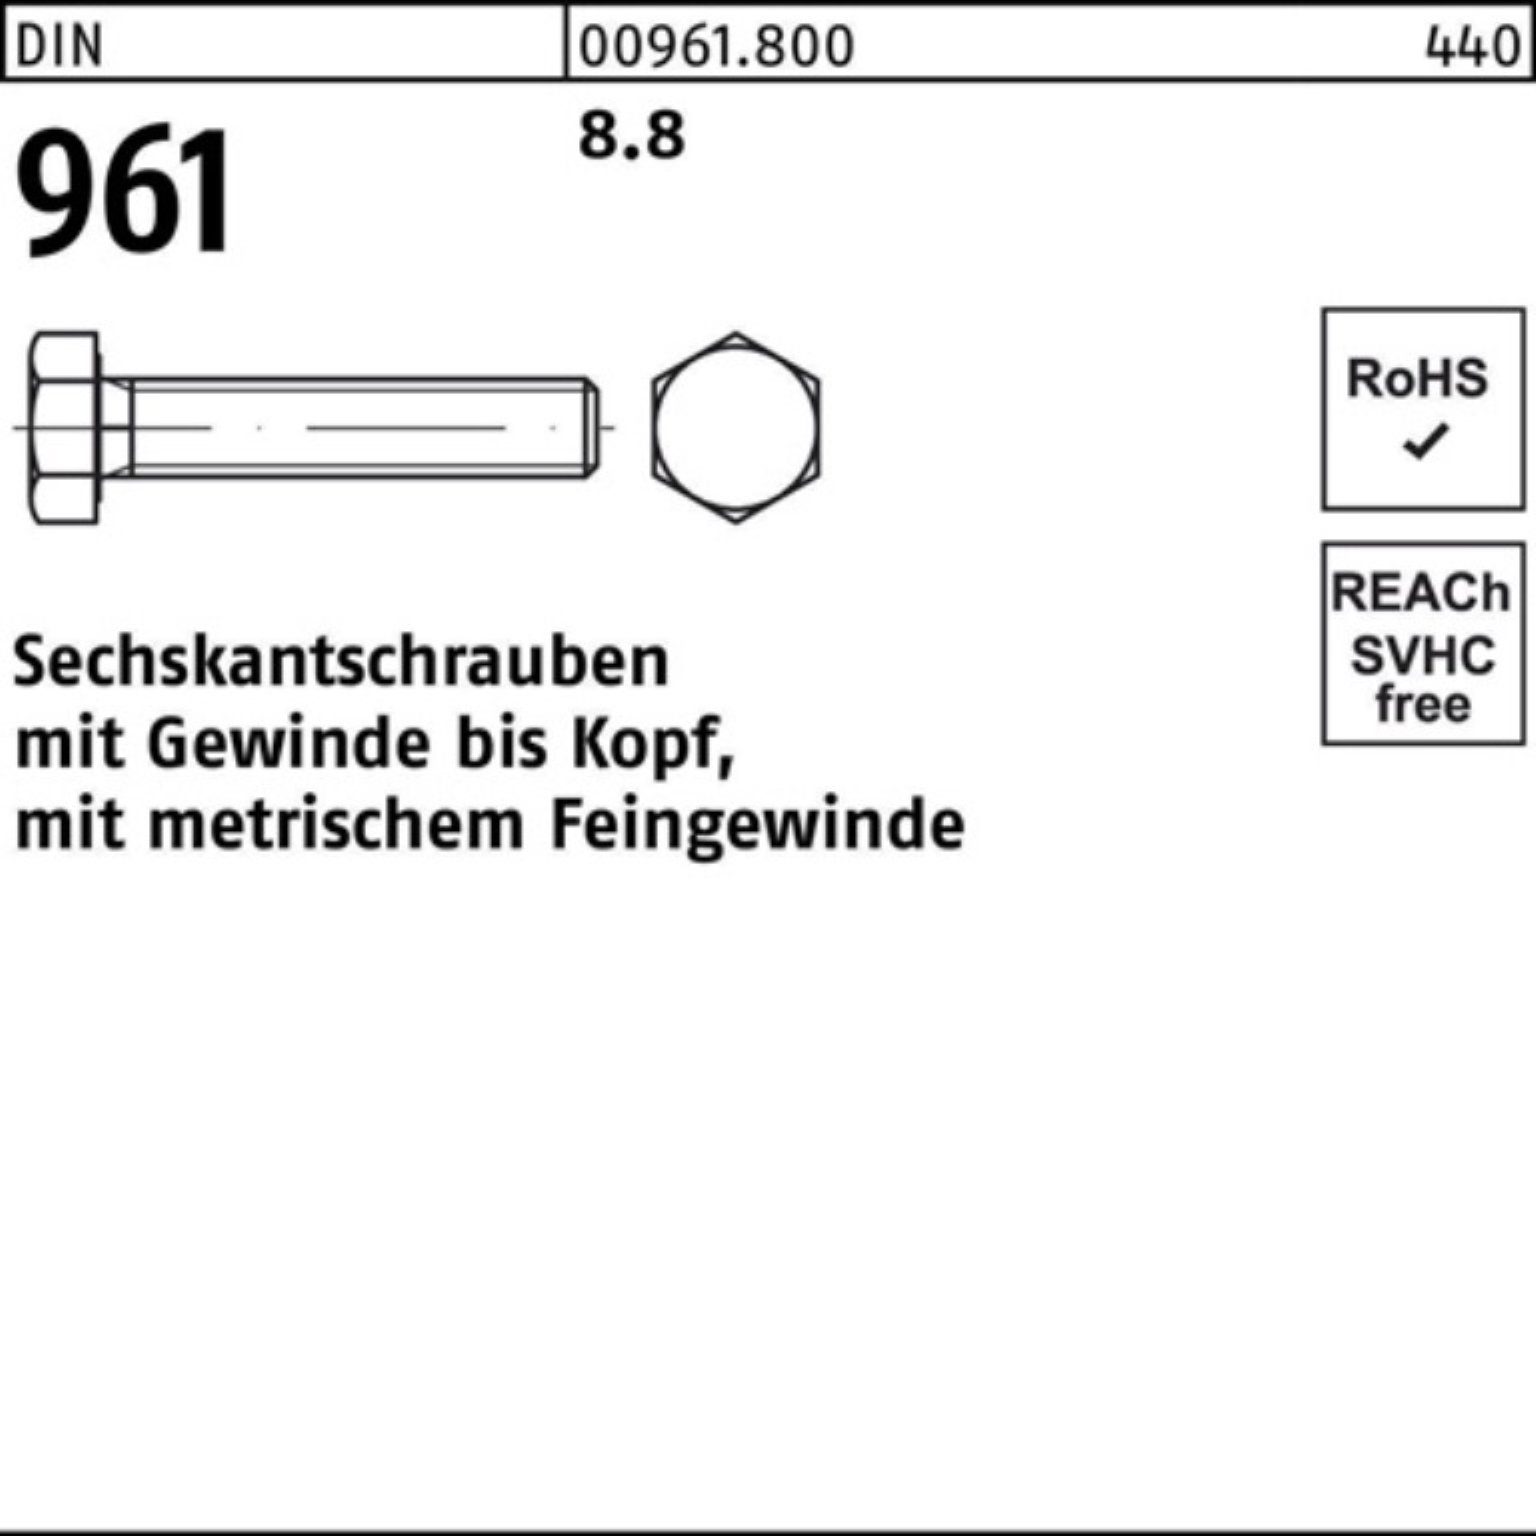 Reyher Sechskantschraube 961 Stück VG 90 Pack Sechskantschraube 100er DIN M12x1,25x 50 8.8 DIN